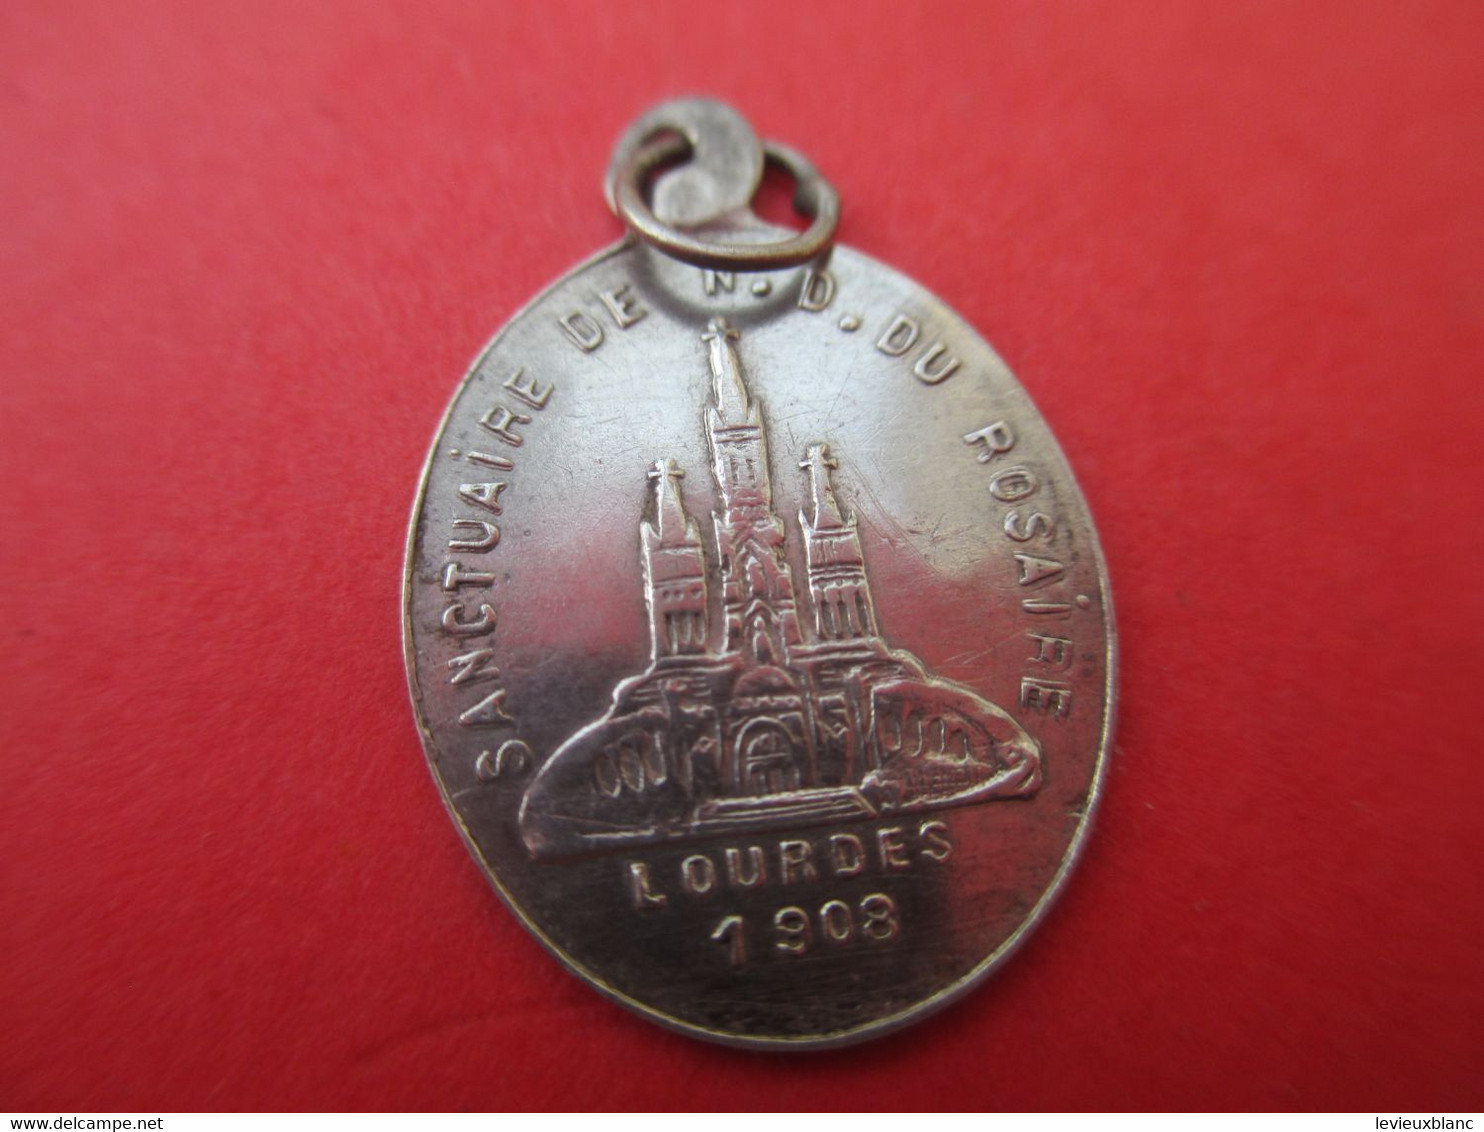 Petite Médaille Religieuse Ancienne/Je Suis L'immaculée Conception 1858 /Argent  / 1908      CAN619 - Religion & Esotérisme